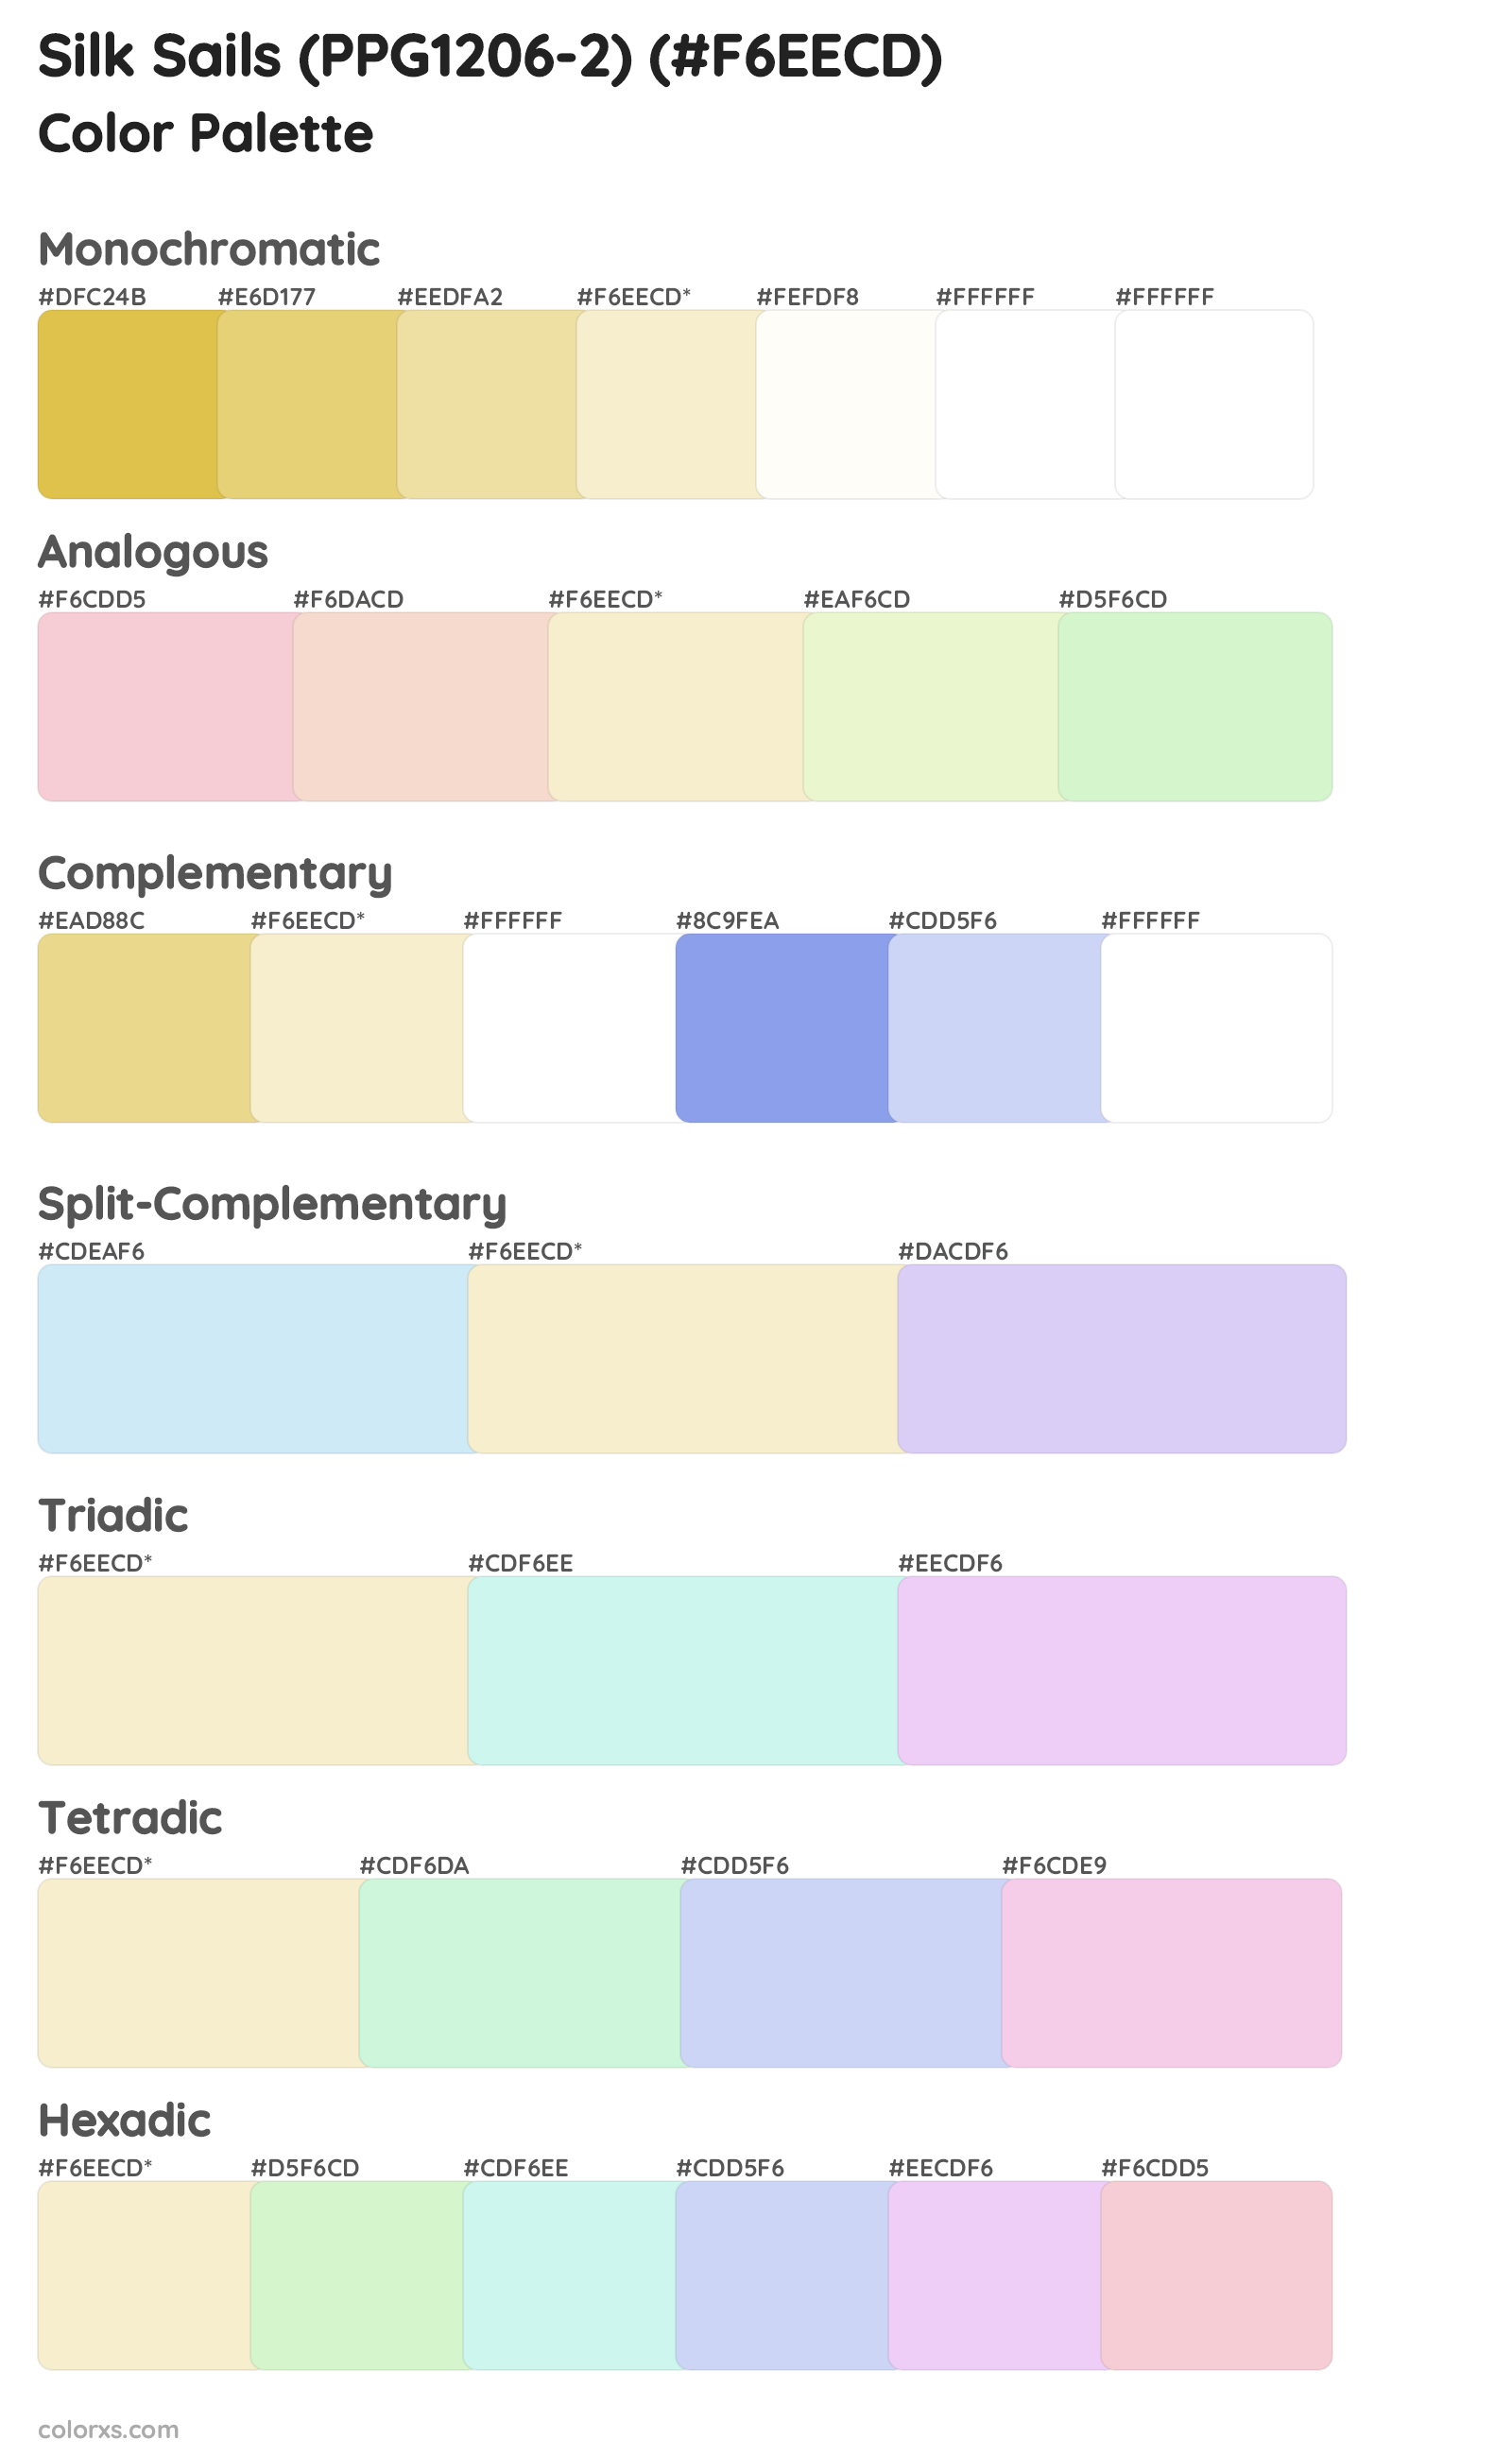 Silk Sails (PPG1206-2) Color Scheme Palettes